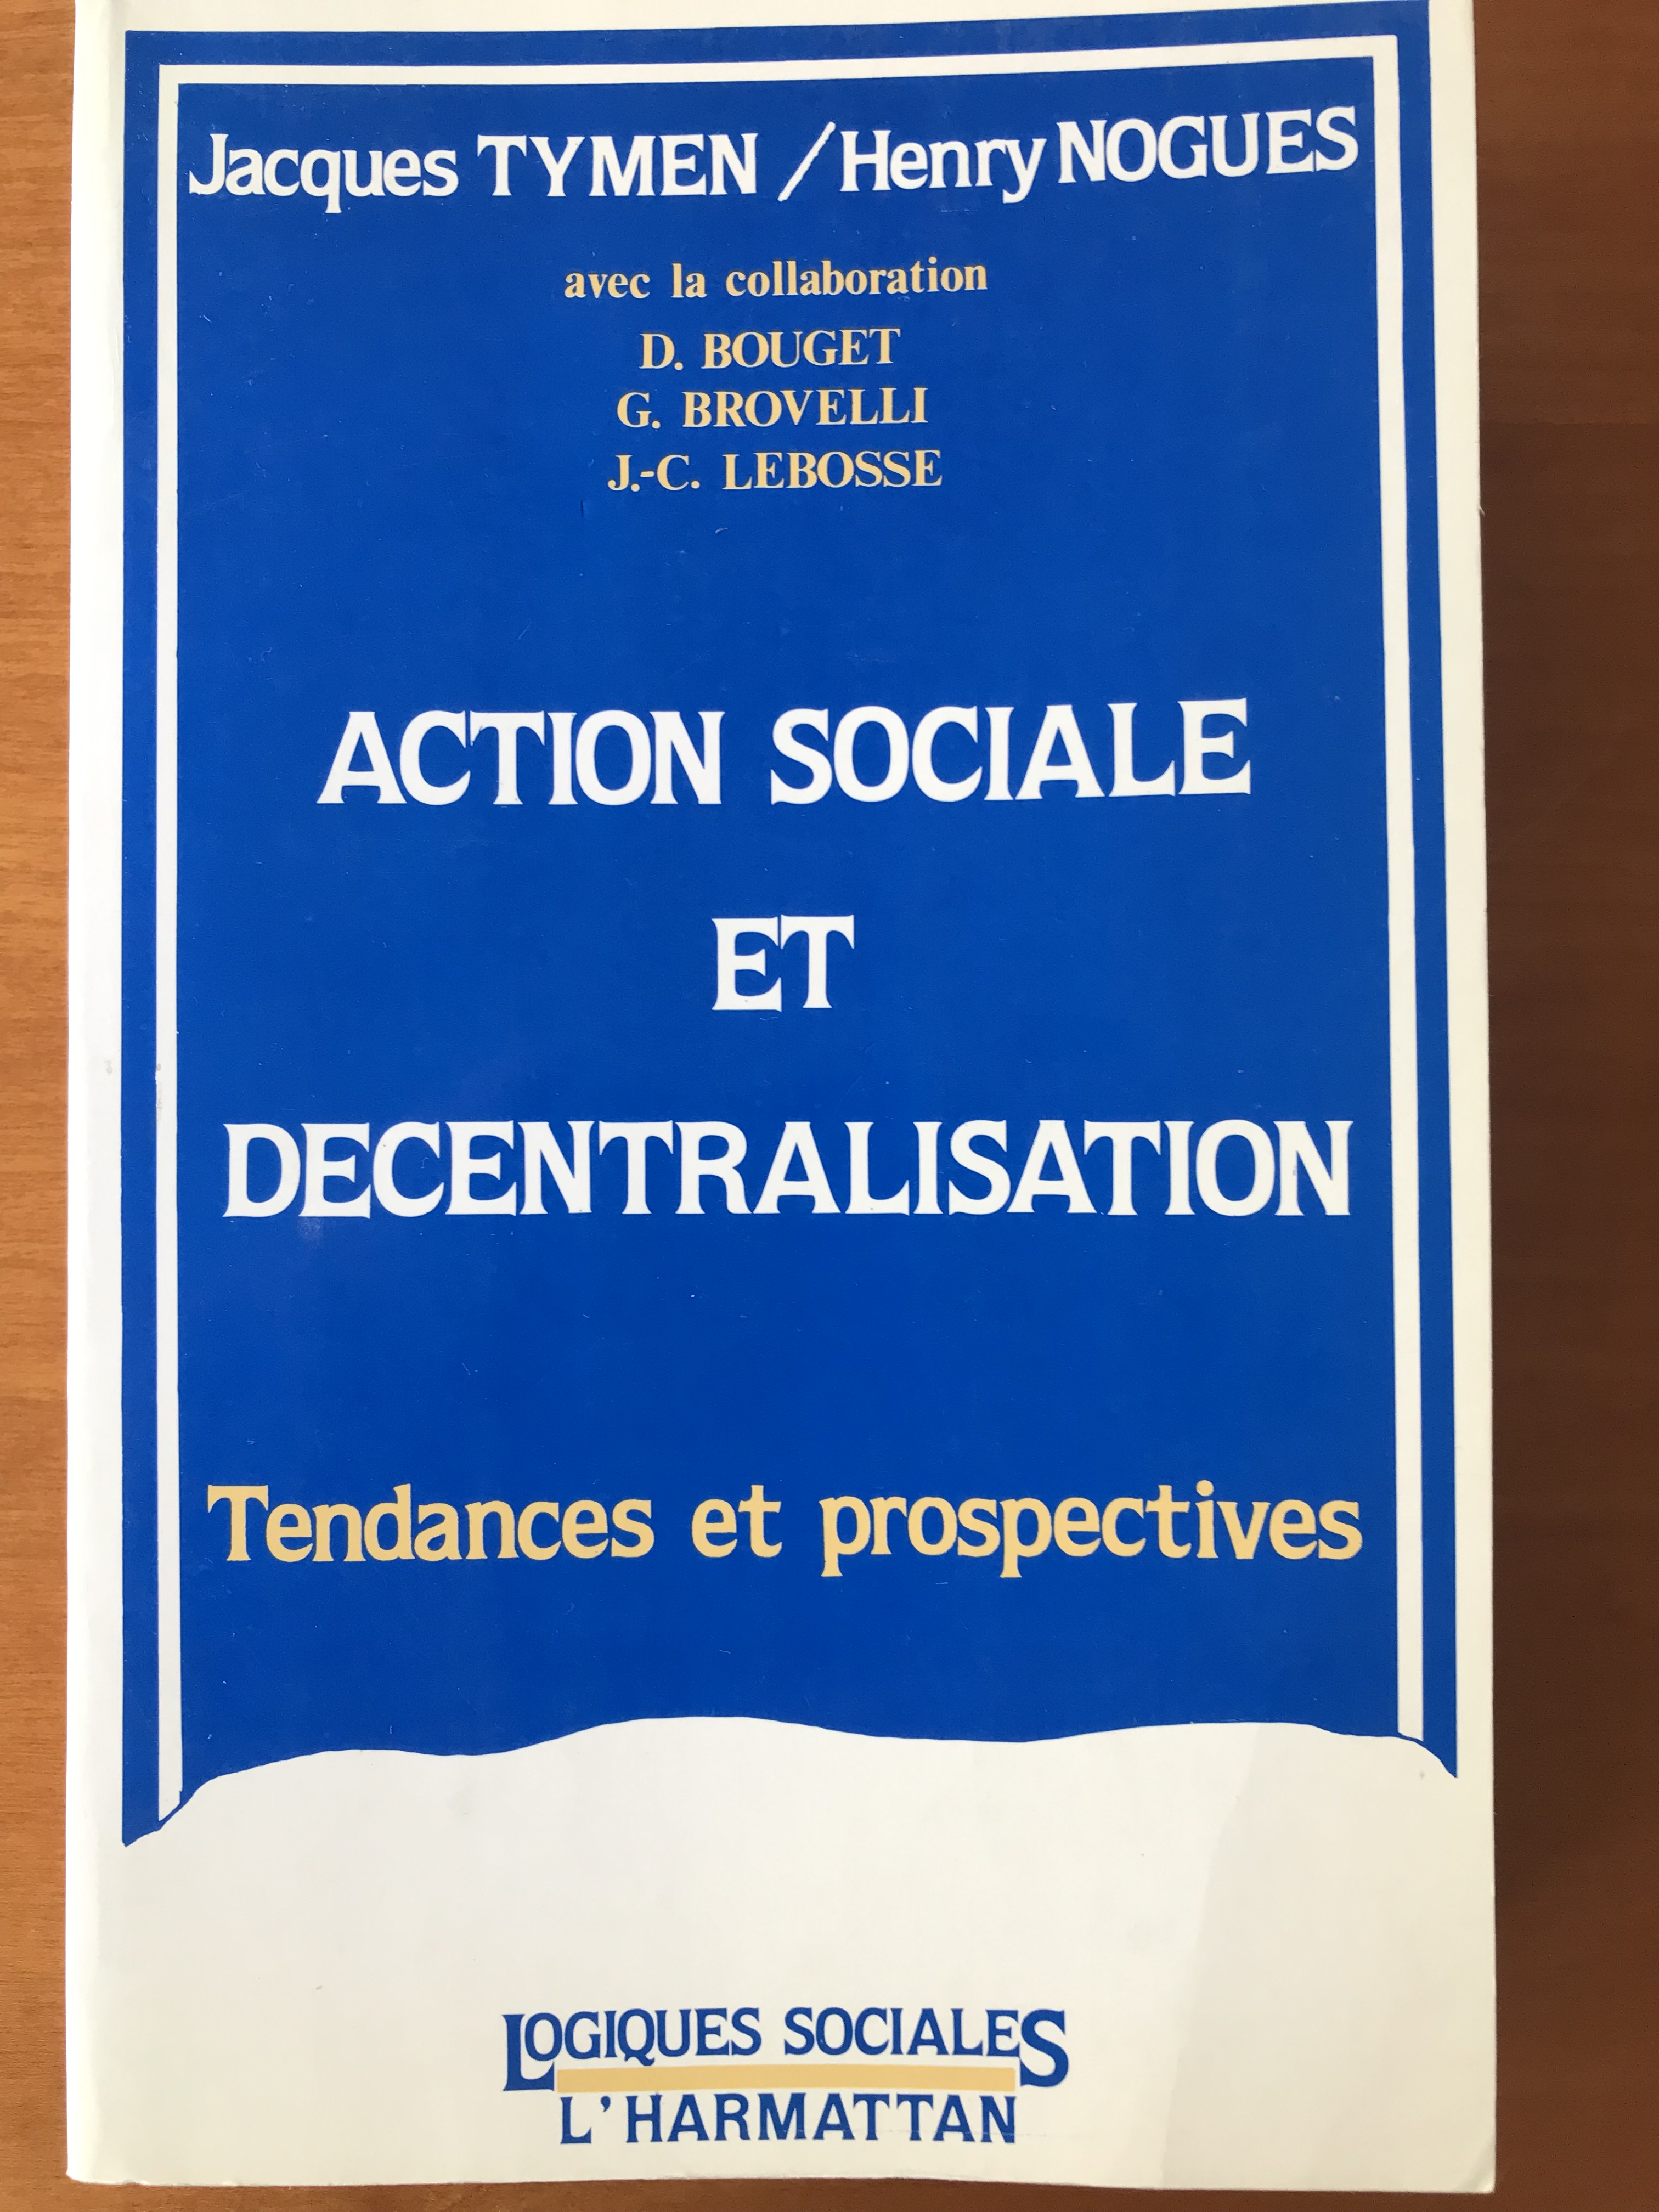 Action sociale et décentralisation – Tendances et prospectives